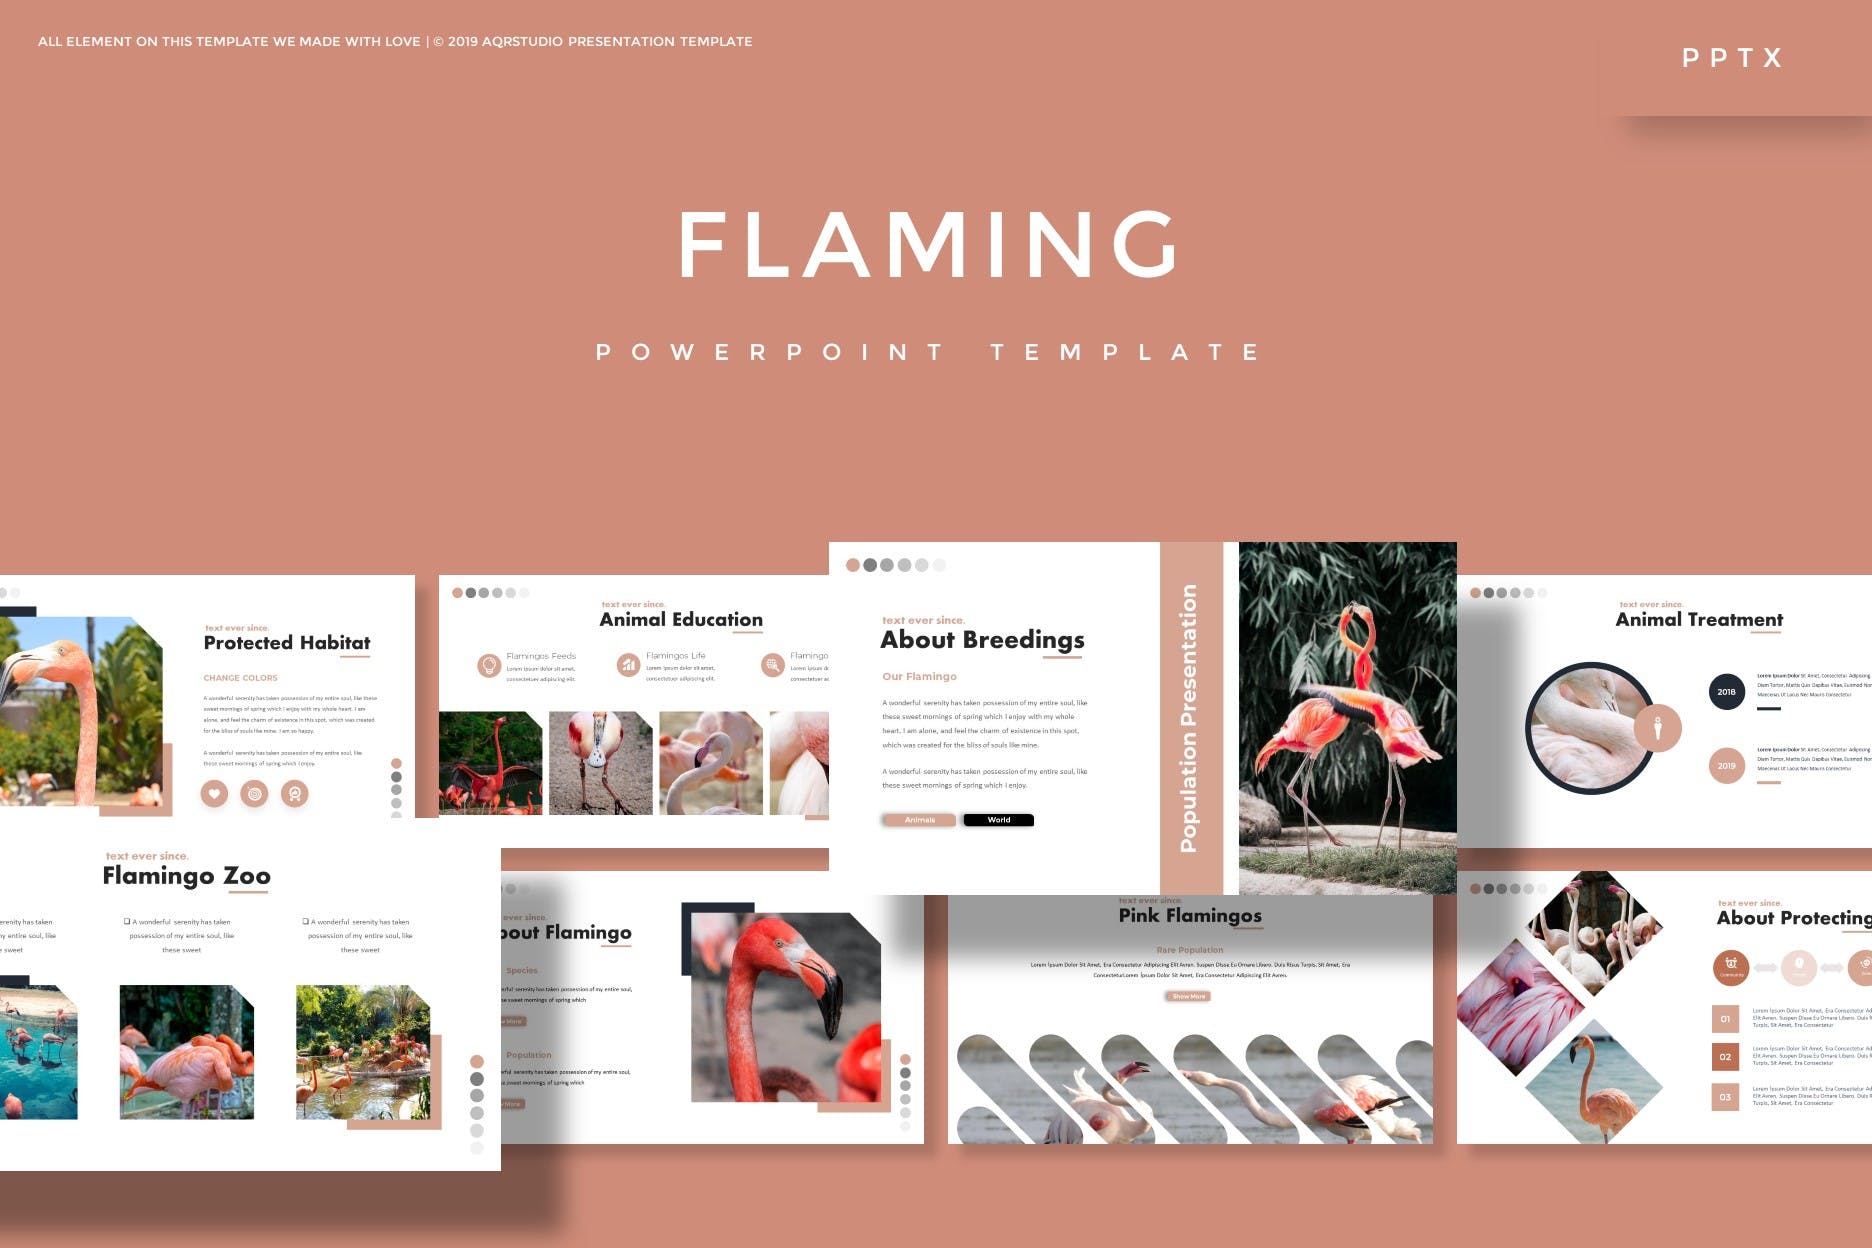 行业市场分析报告PPT设计模板 Flaming – Powerpoint Template插图